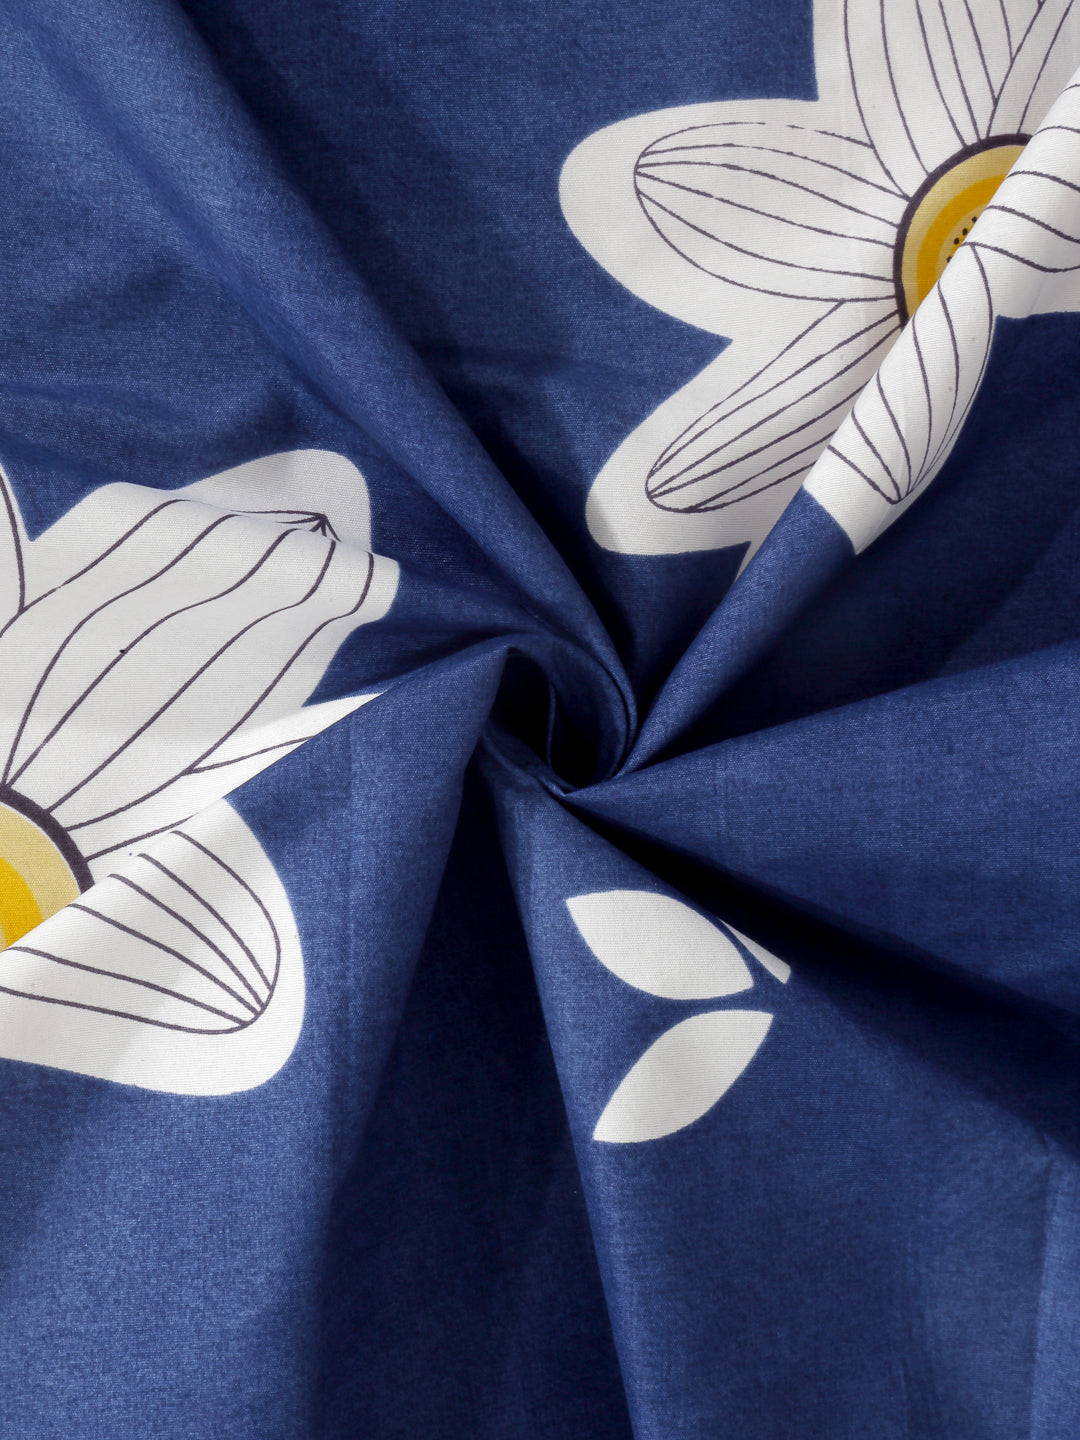 Arrabi Blue Floral Cotton Blend 8 SEATER Table Cover (215 x 150 cm)